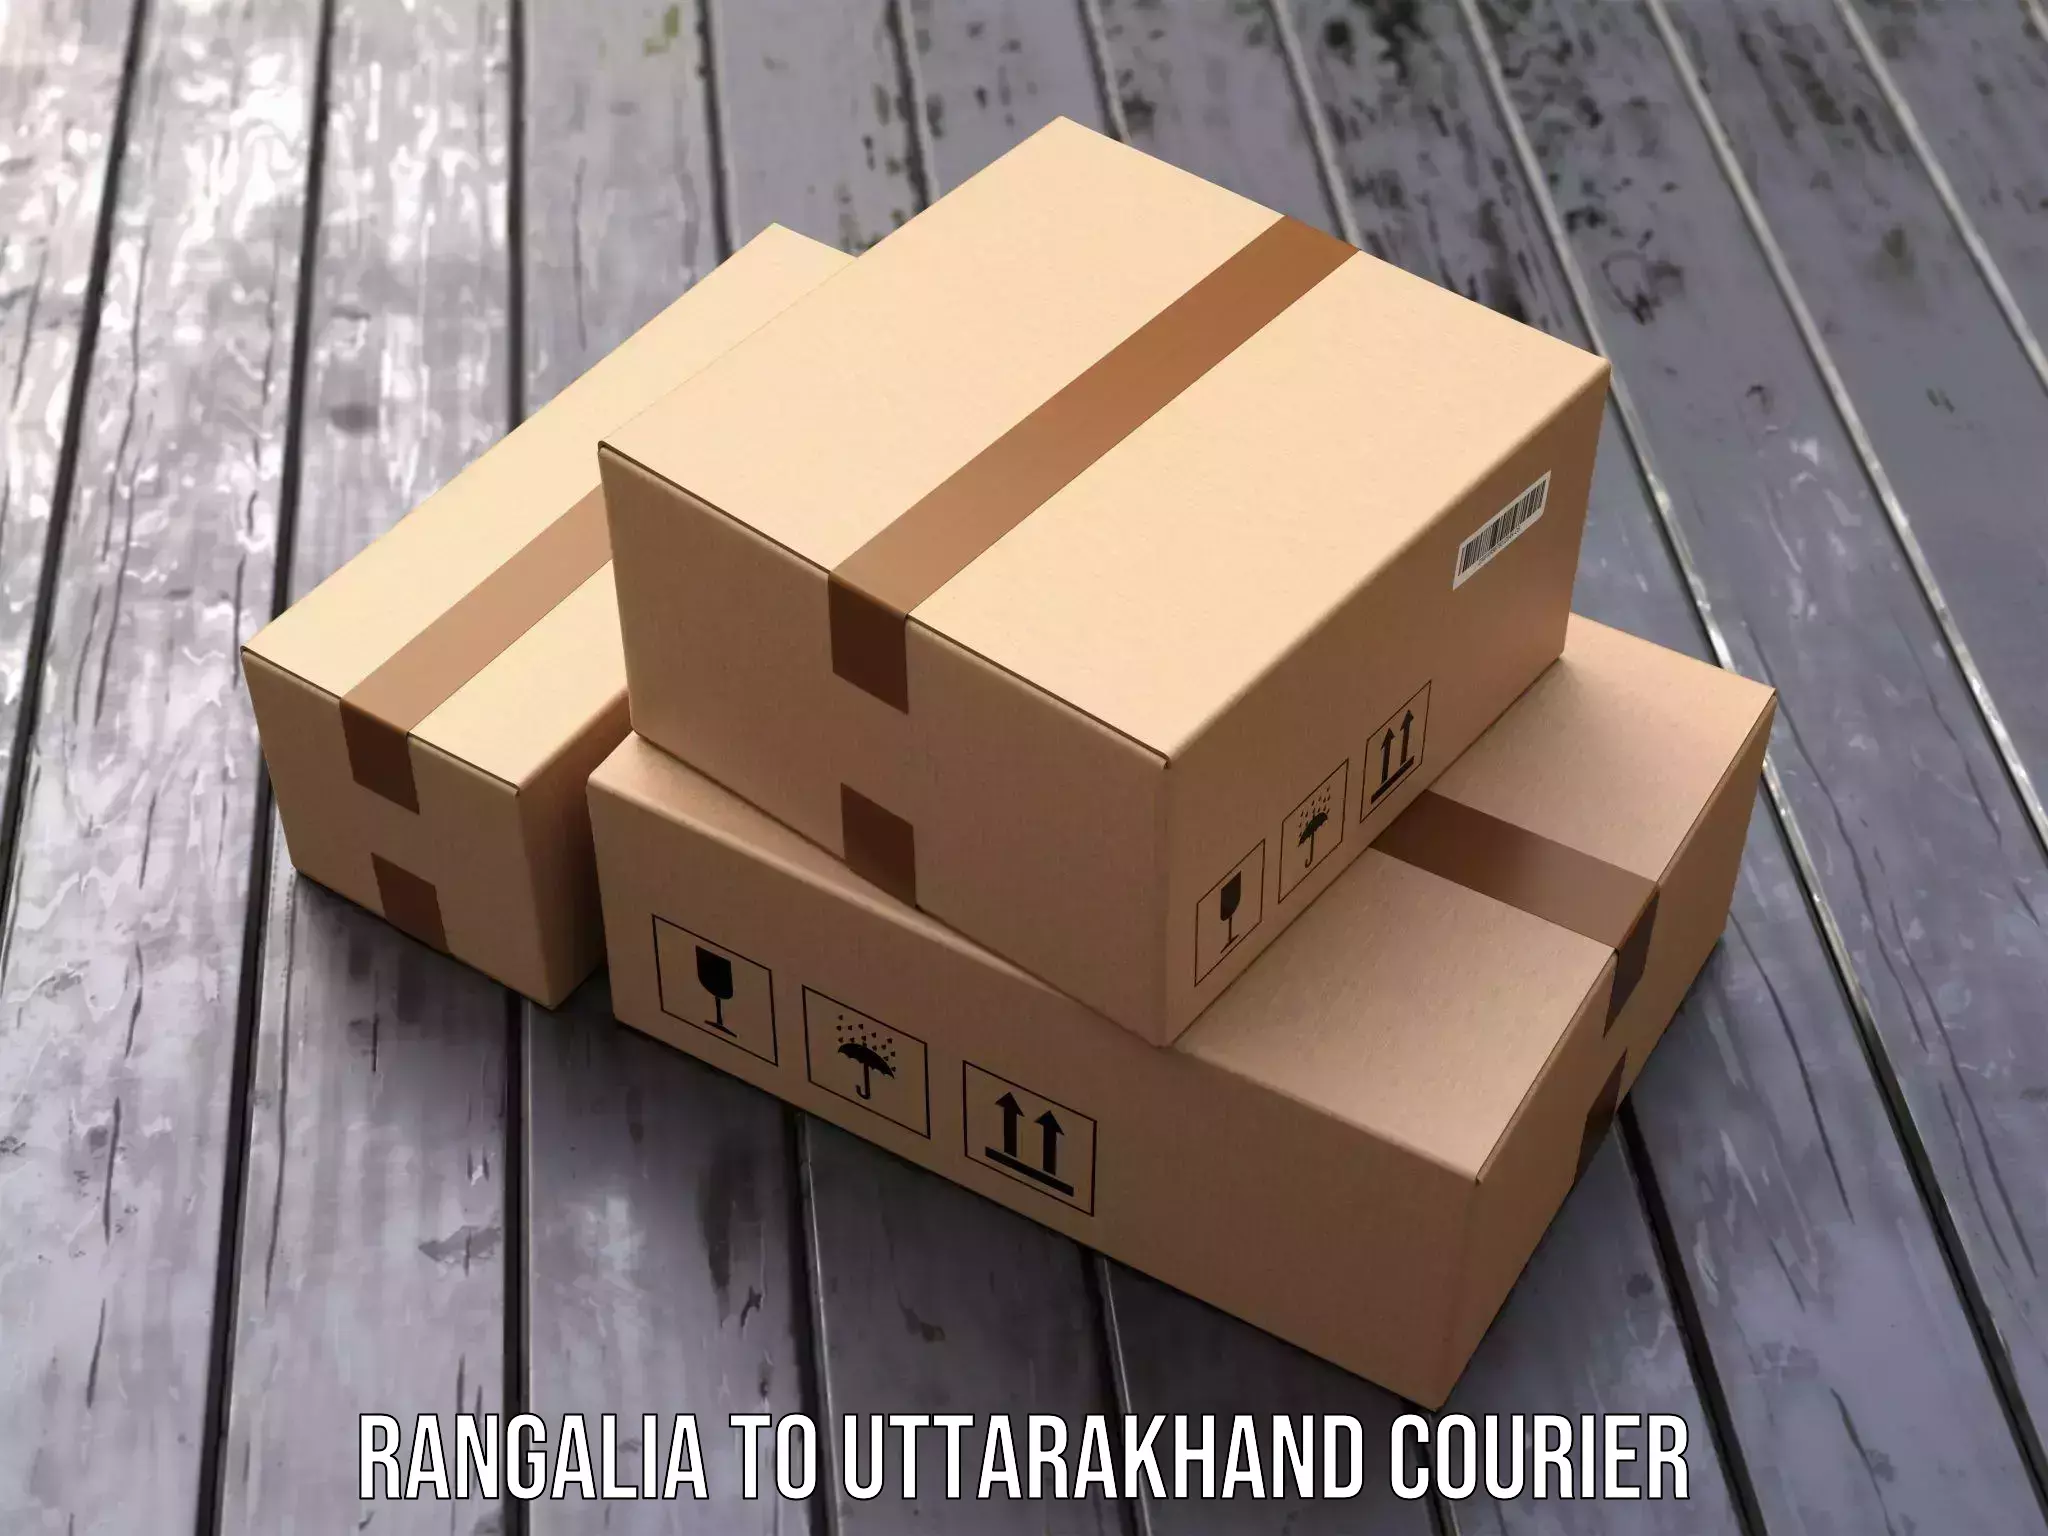 Reliable freight solutions Rangalia to Dehradun